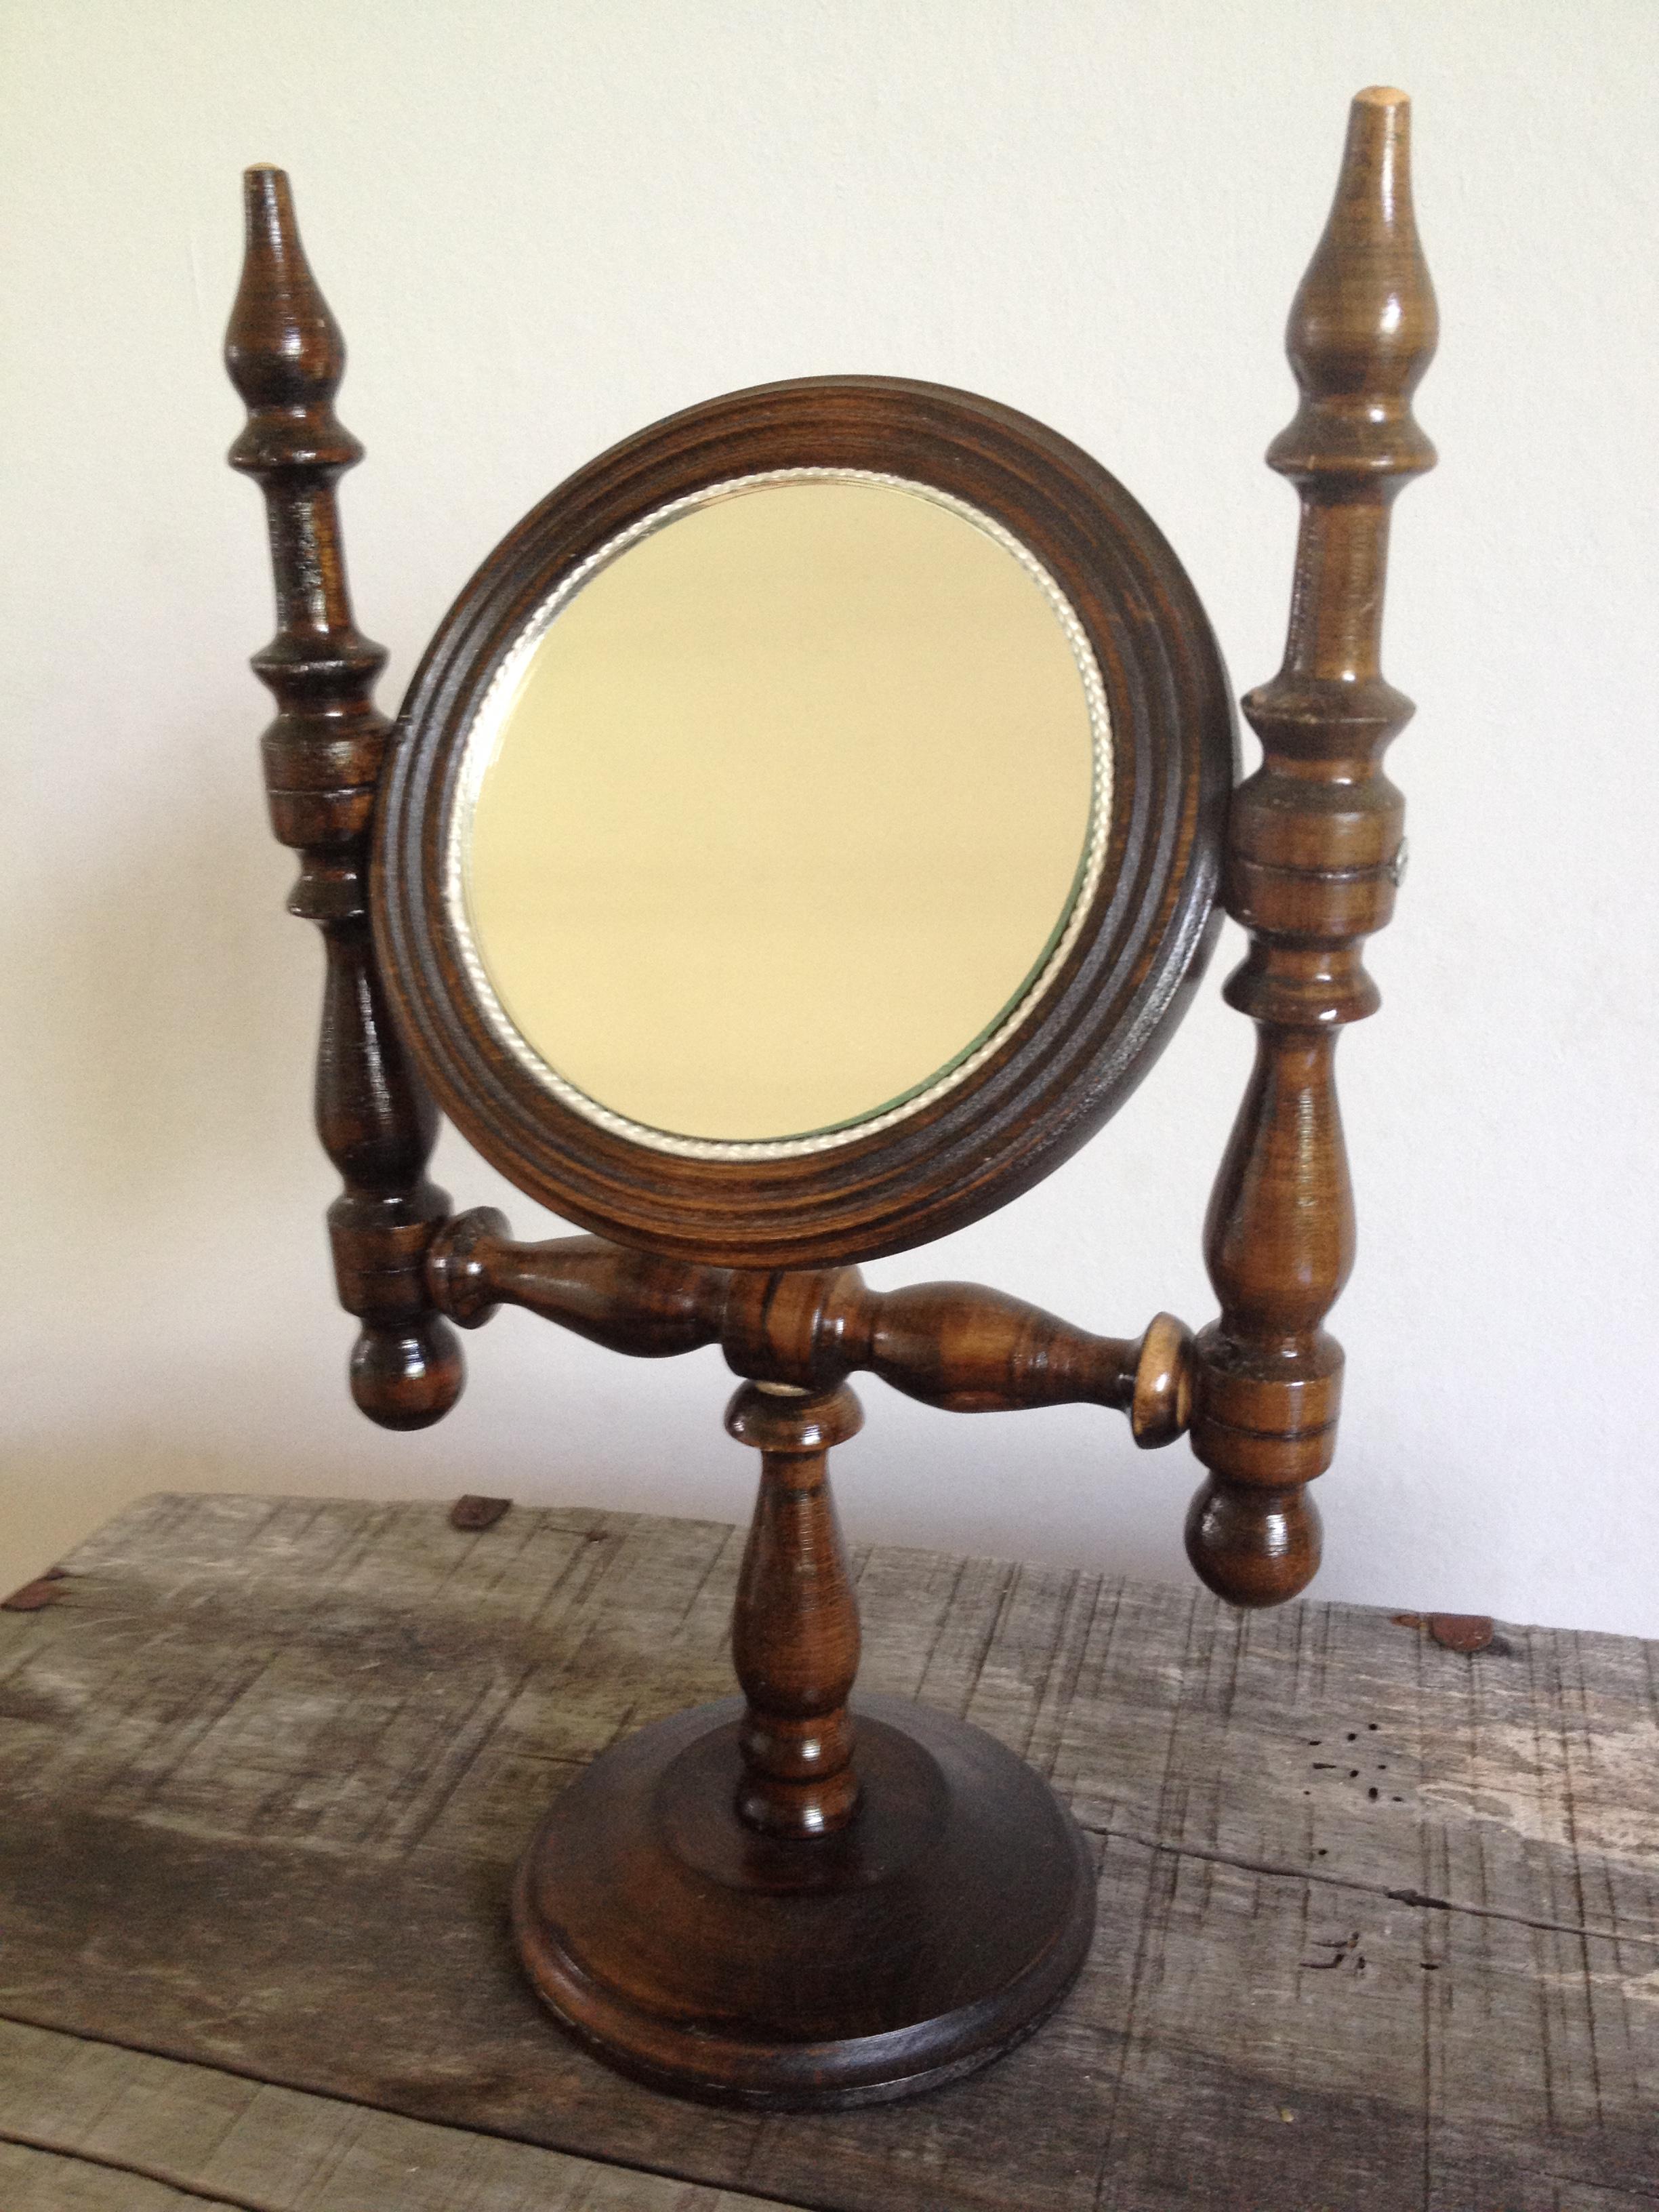 Tischspiegel in klassischem Design, makelloser Zustand, h 32 cm, Durchmesser Spiegel 11 cm